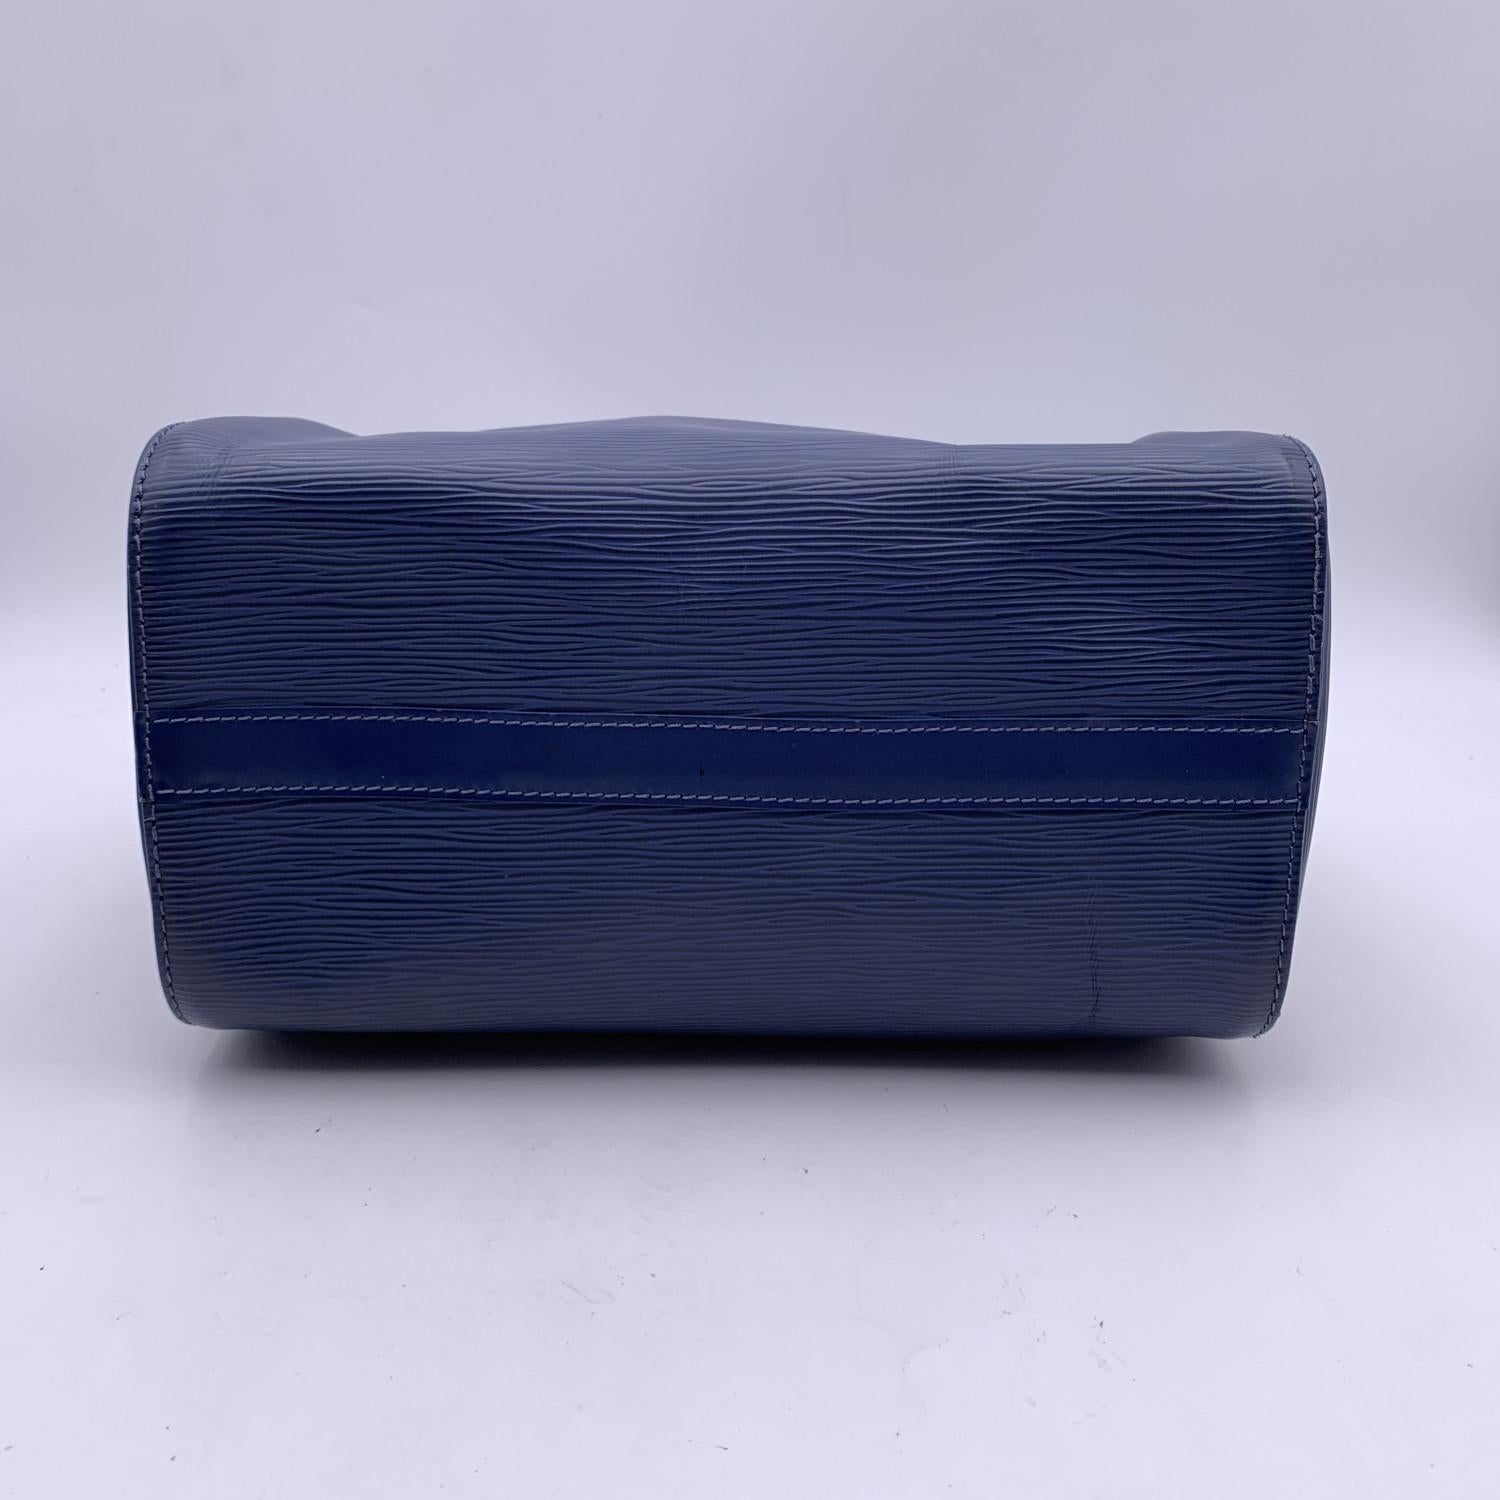 Louis Vuitton Toledo Blue Epi Leather Speedy 25 Boston Bag Handbag 11